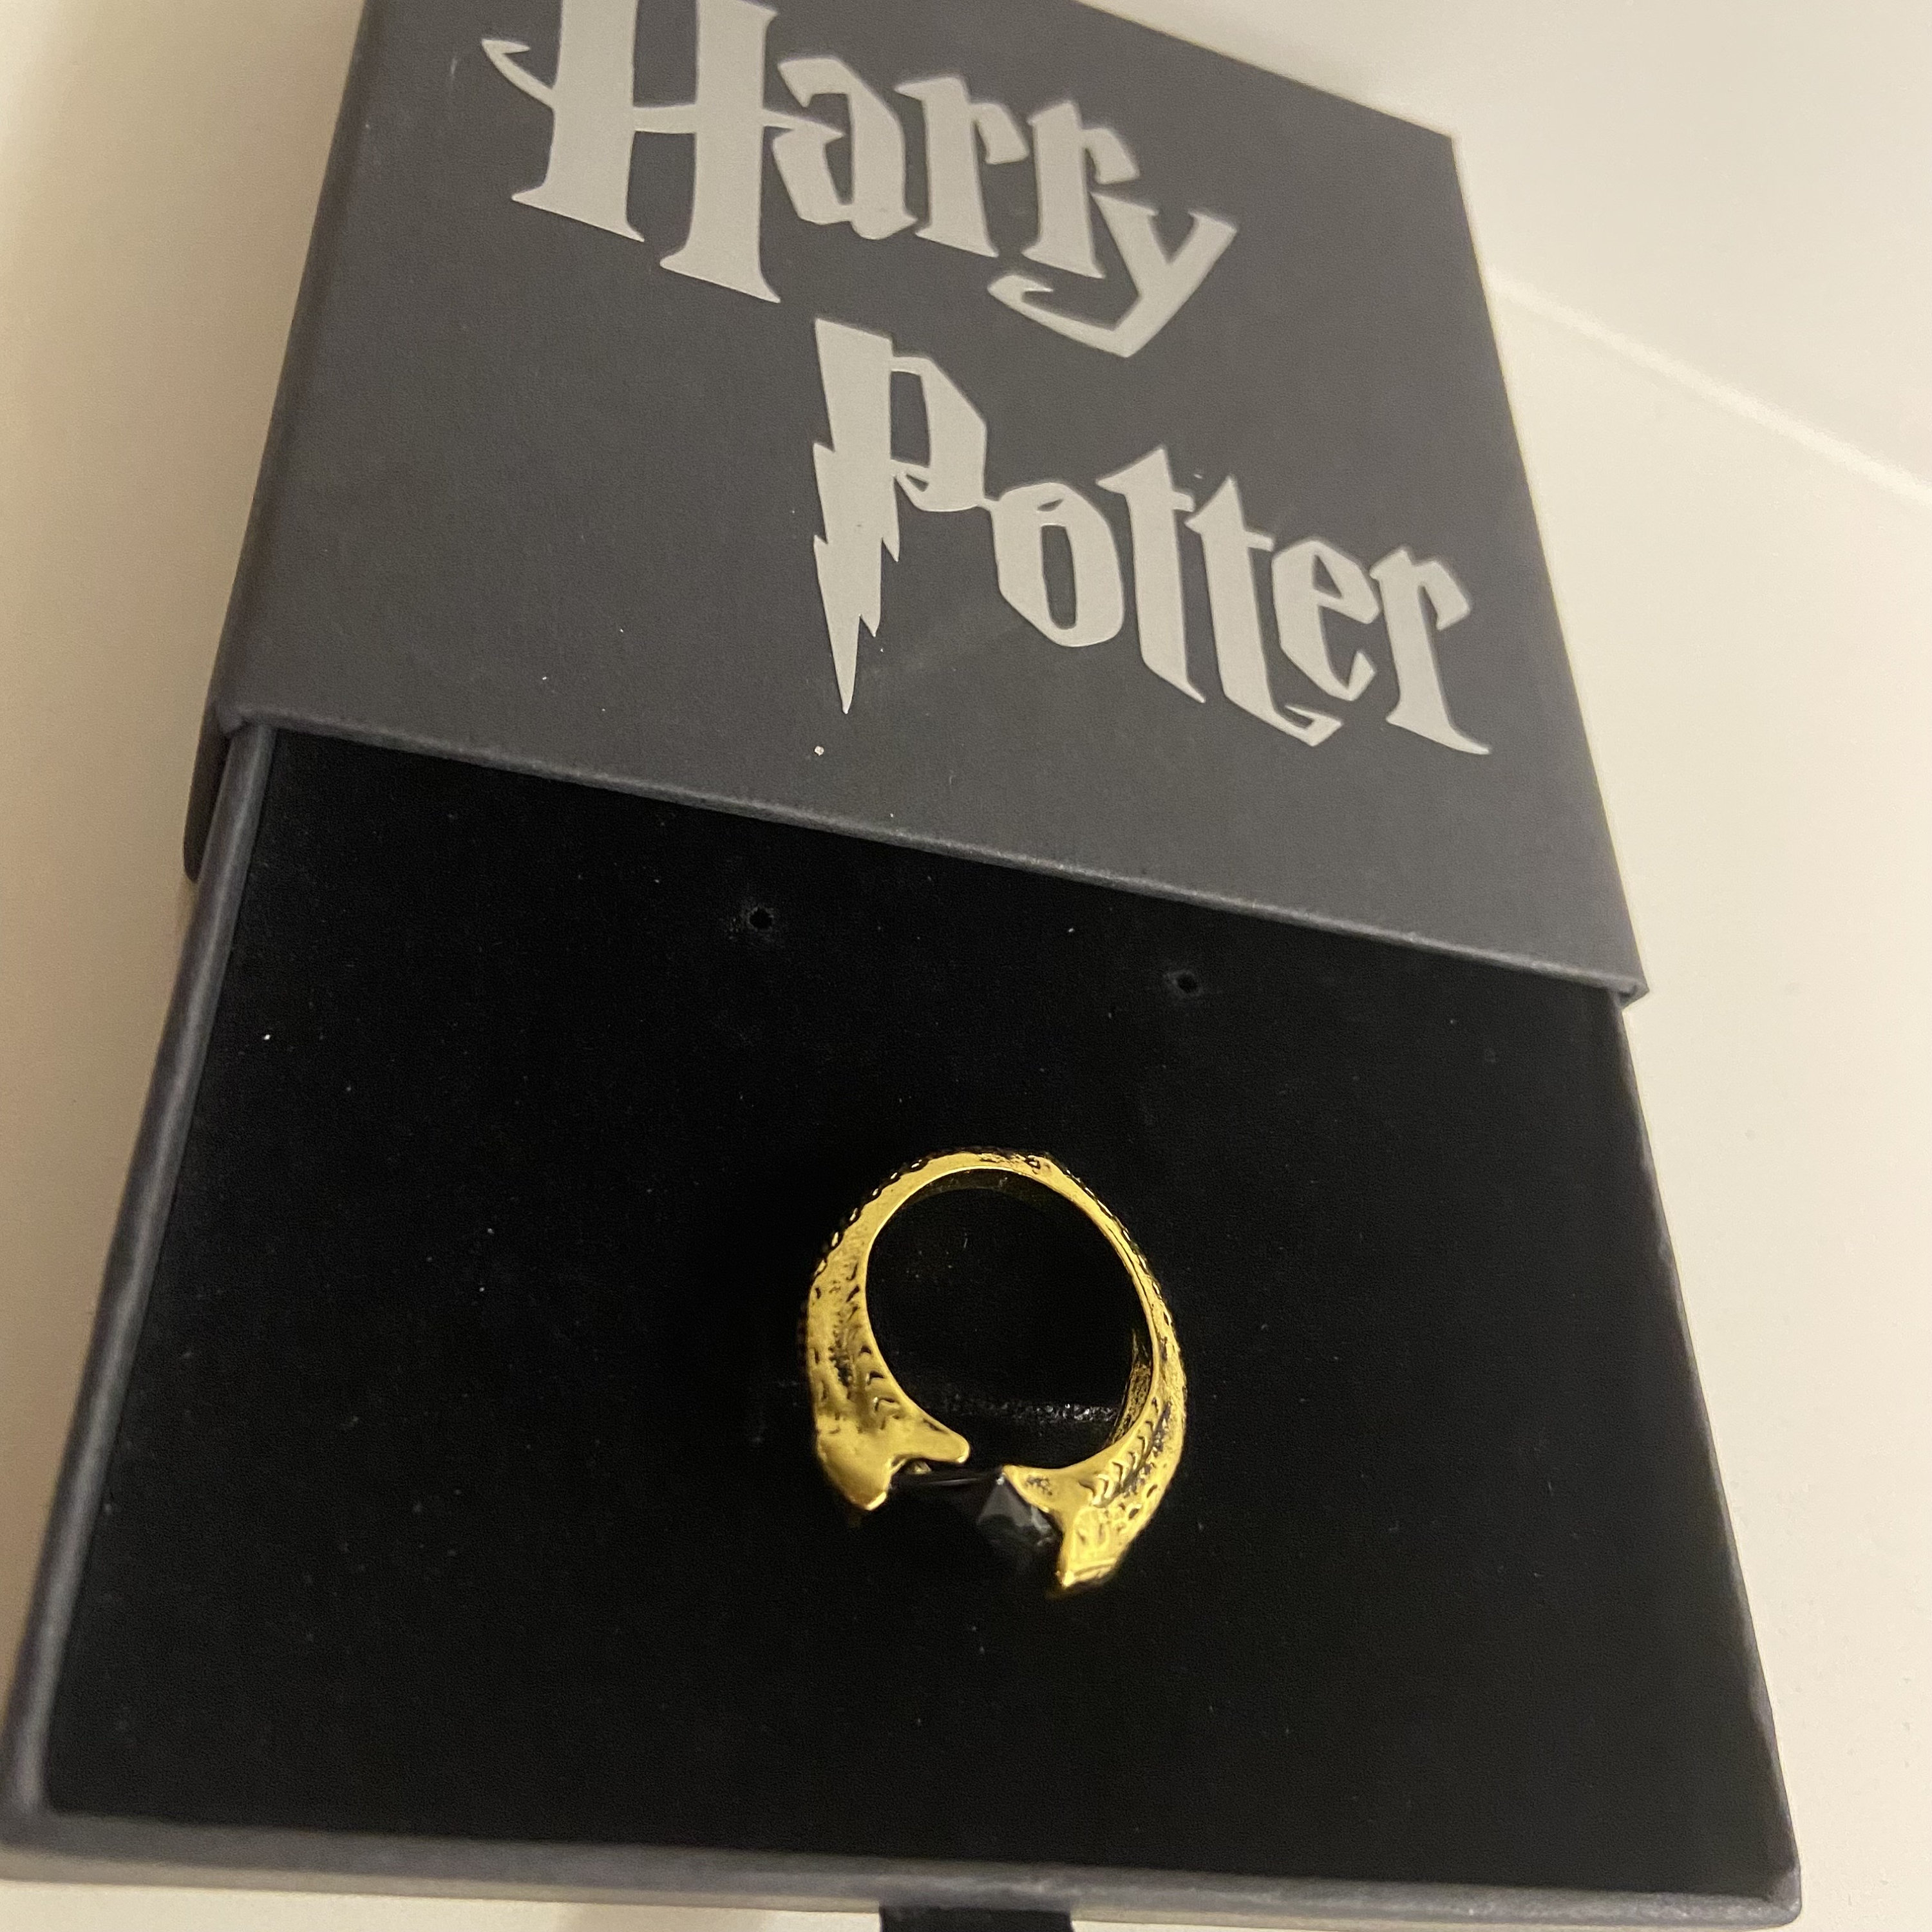 Harry Potter als Ring: Der goldene Schnatz ist perfekt für die Verlobung